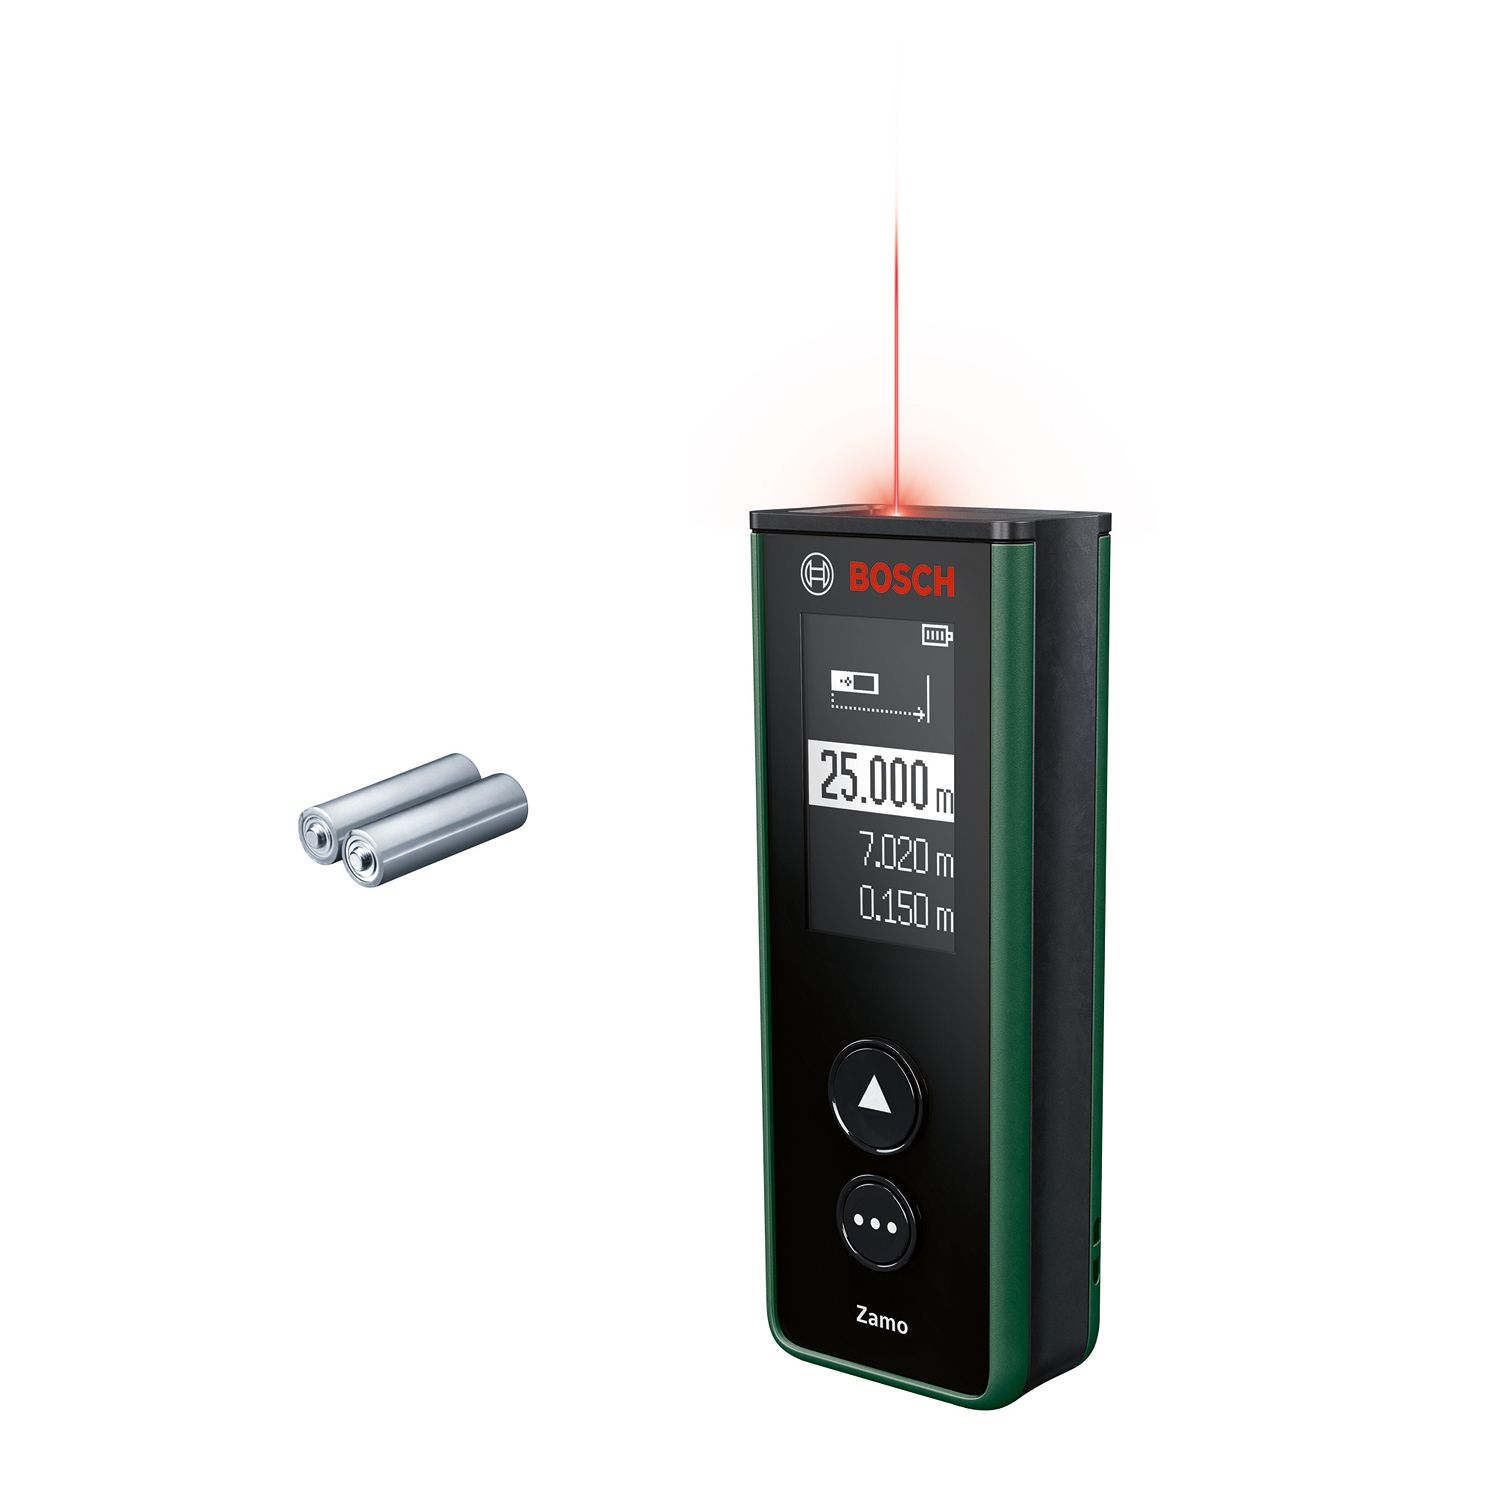 BOSCH Bosch laser measure Zamo Laser-Line Adapte…